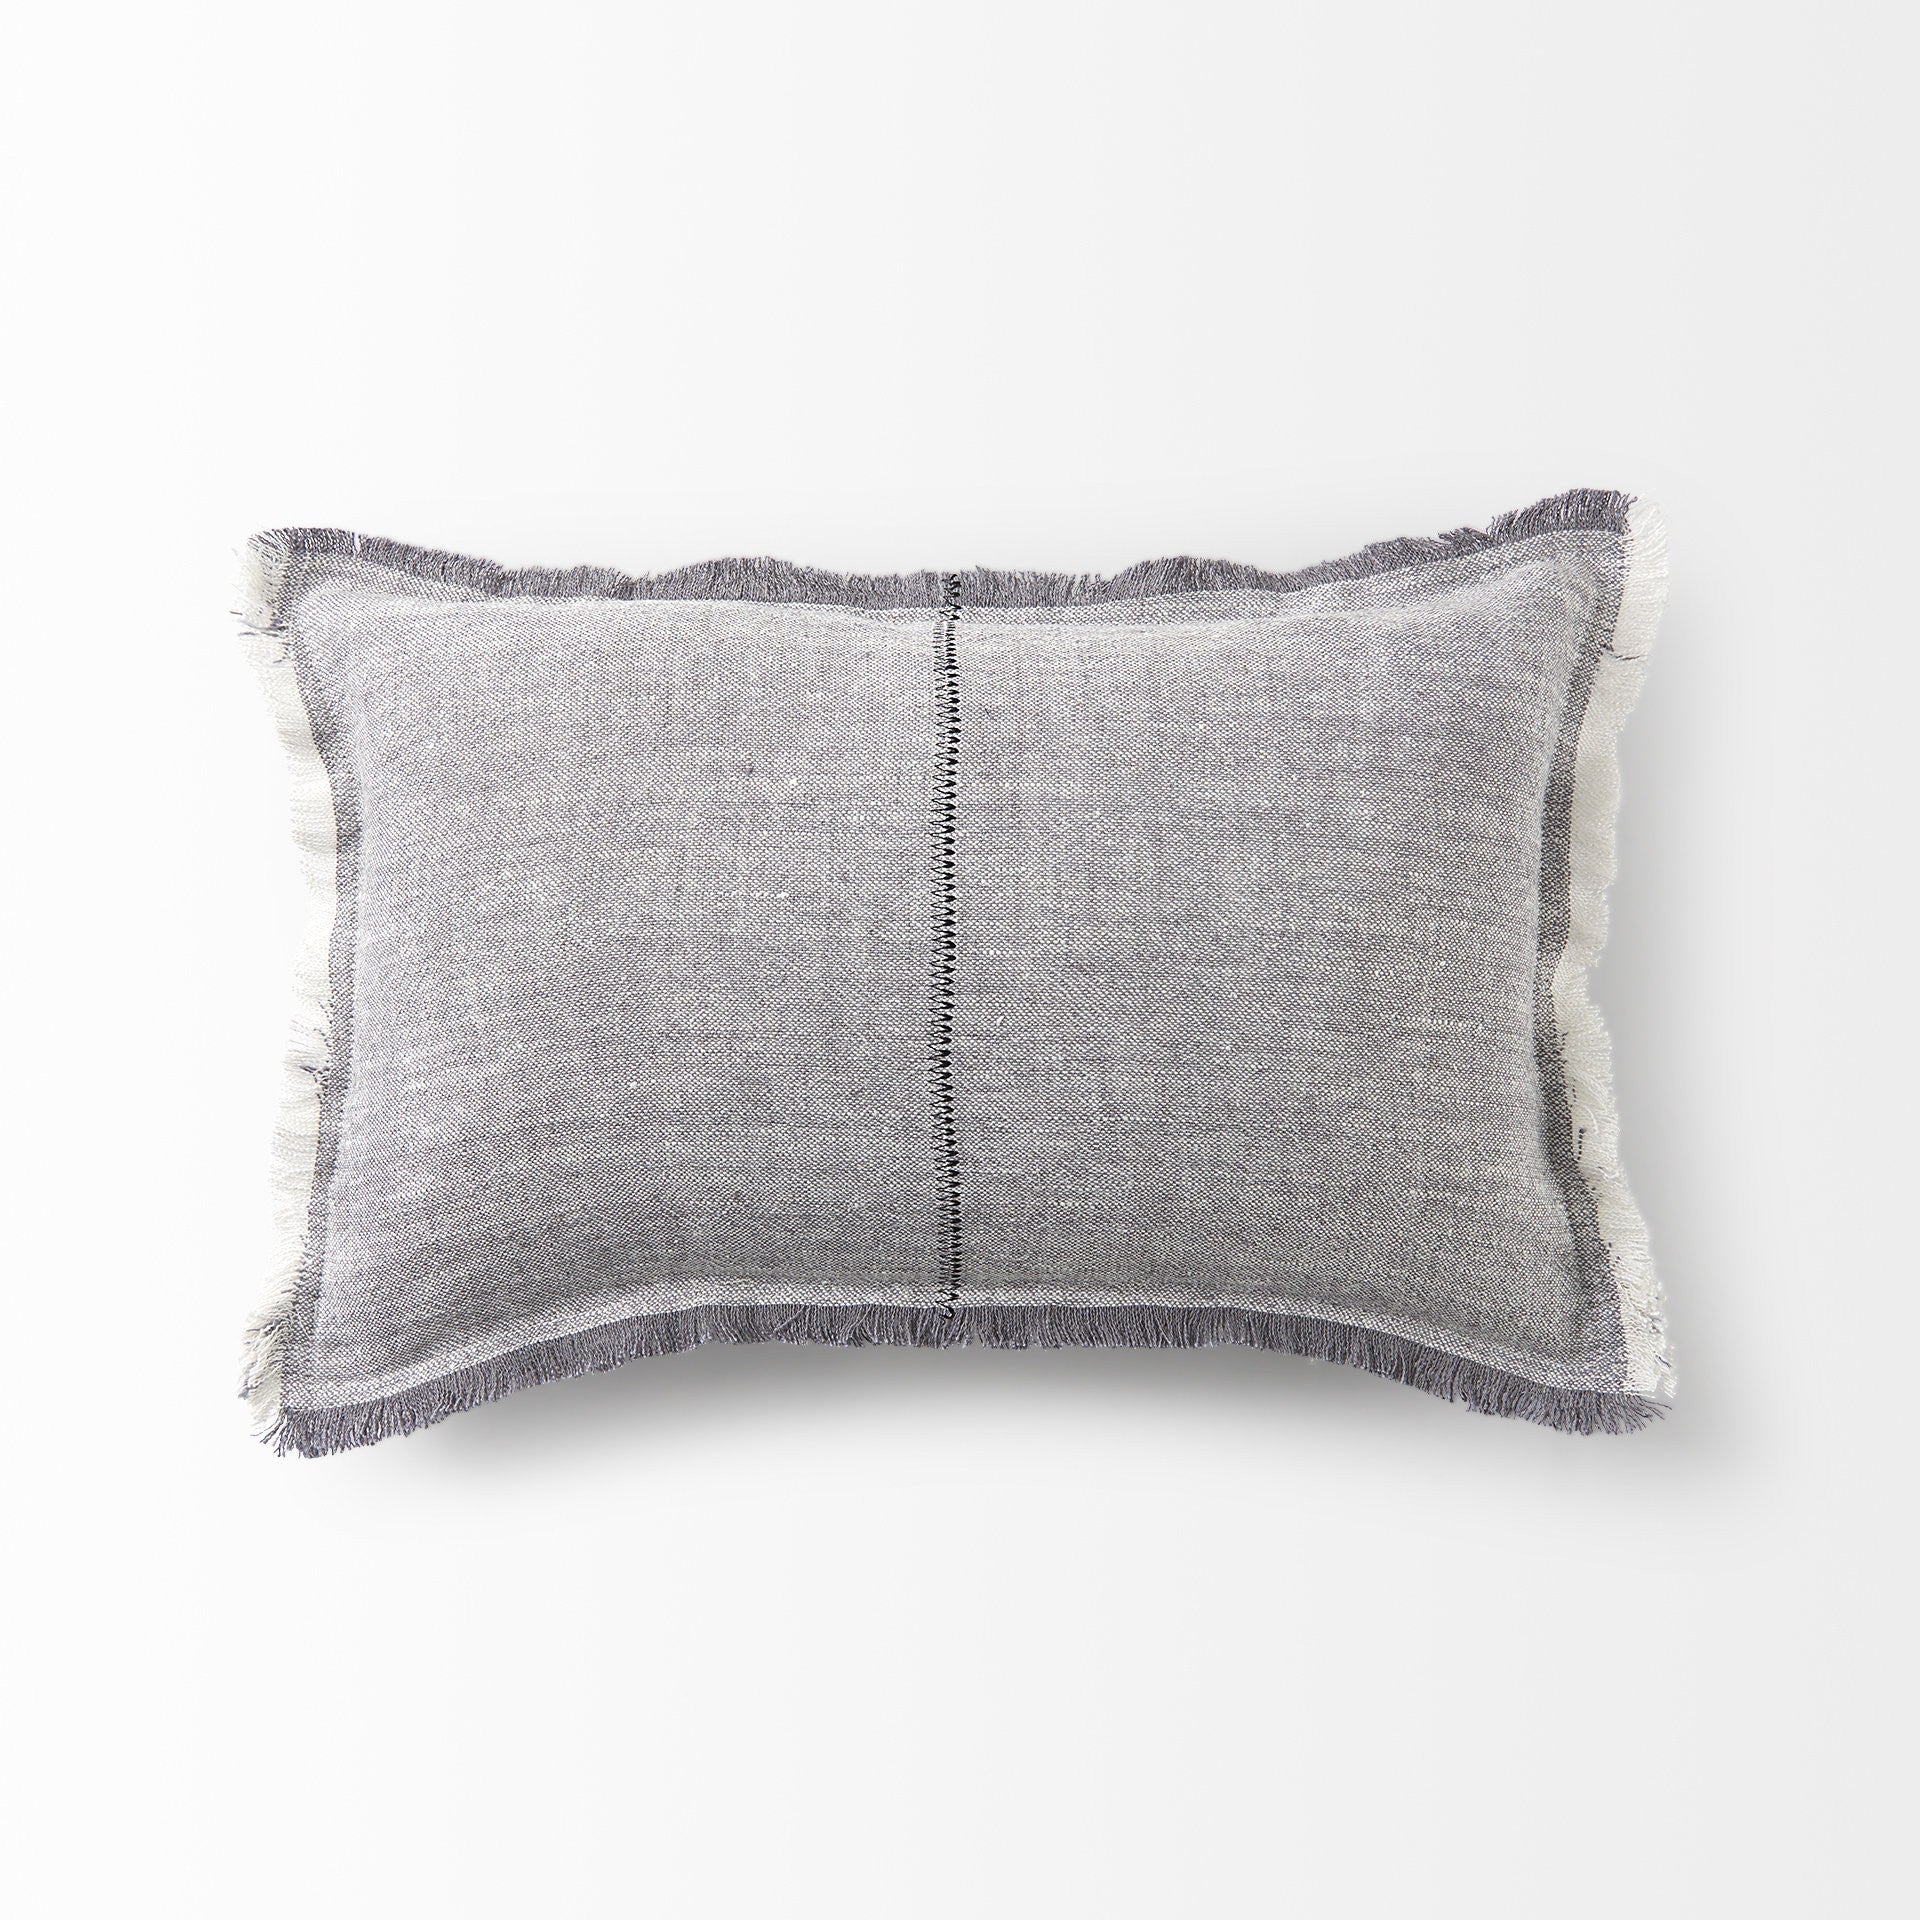 Light Gray Fringed Lumbar Throw Pillow Cover-4